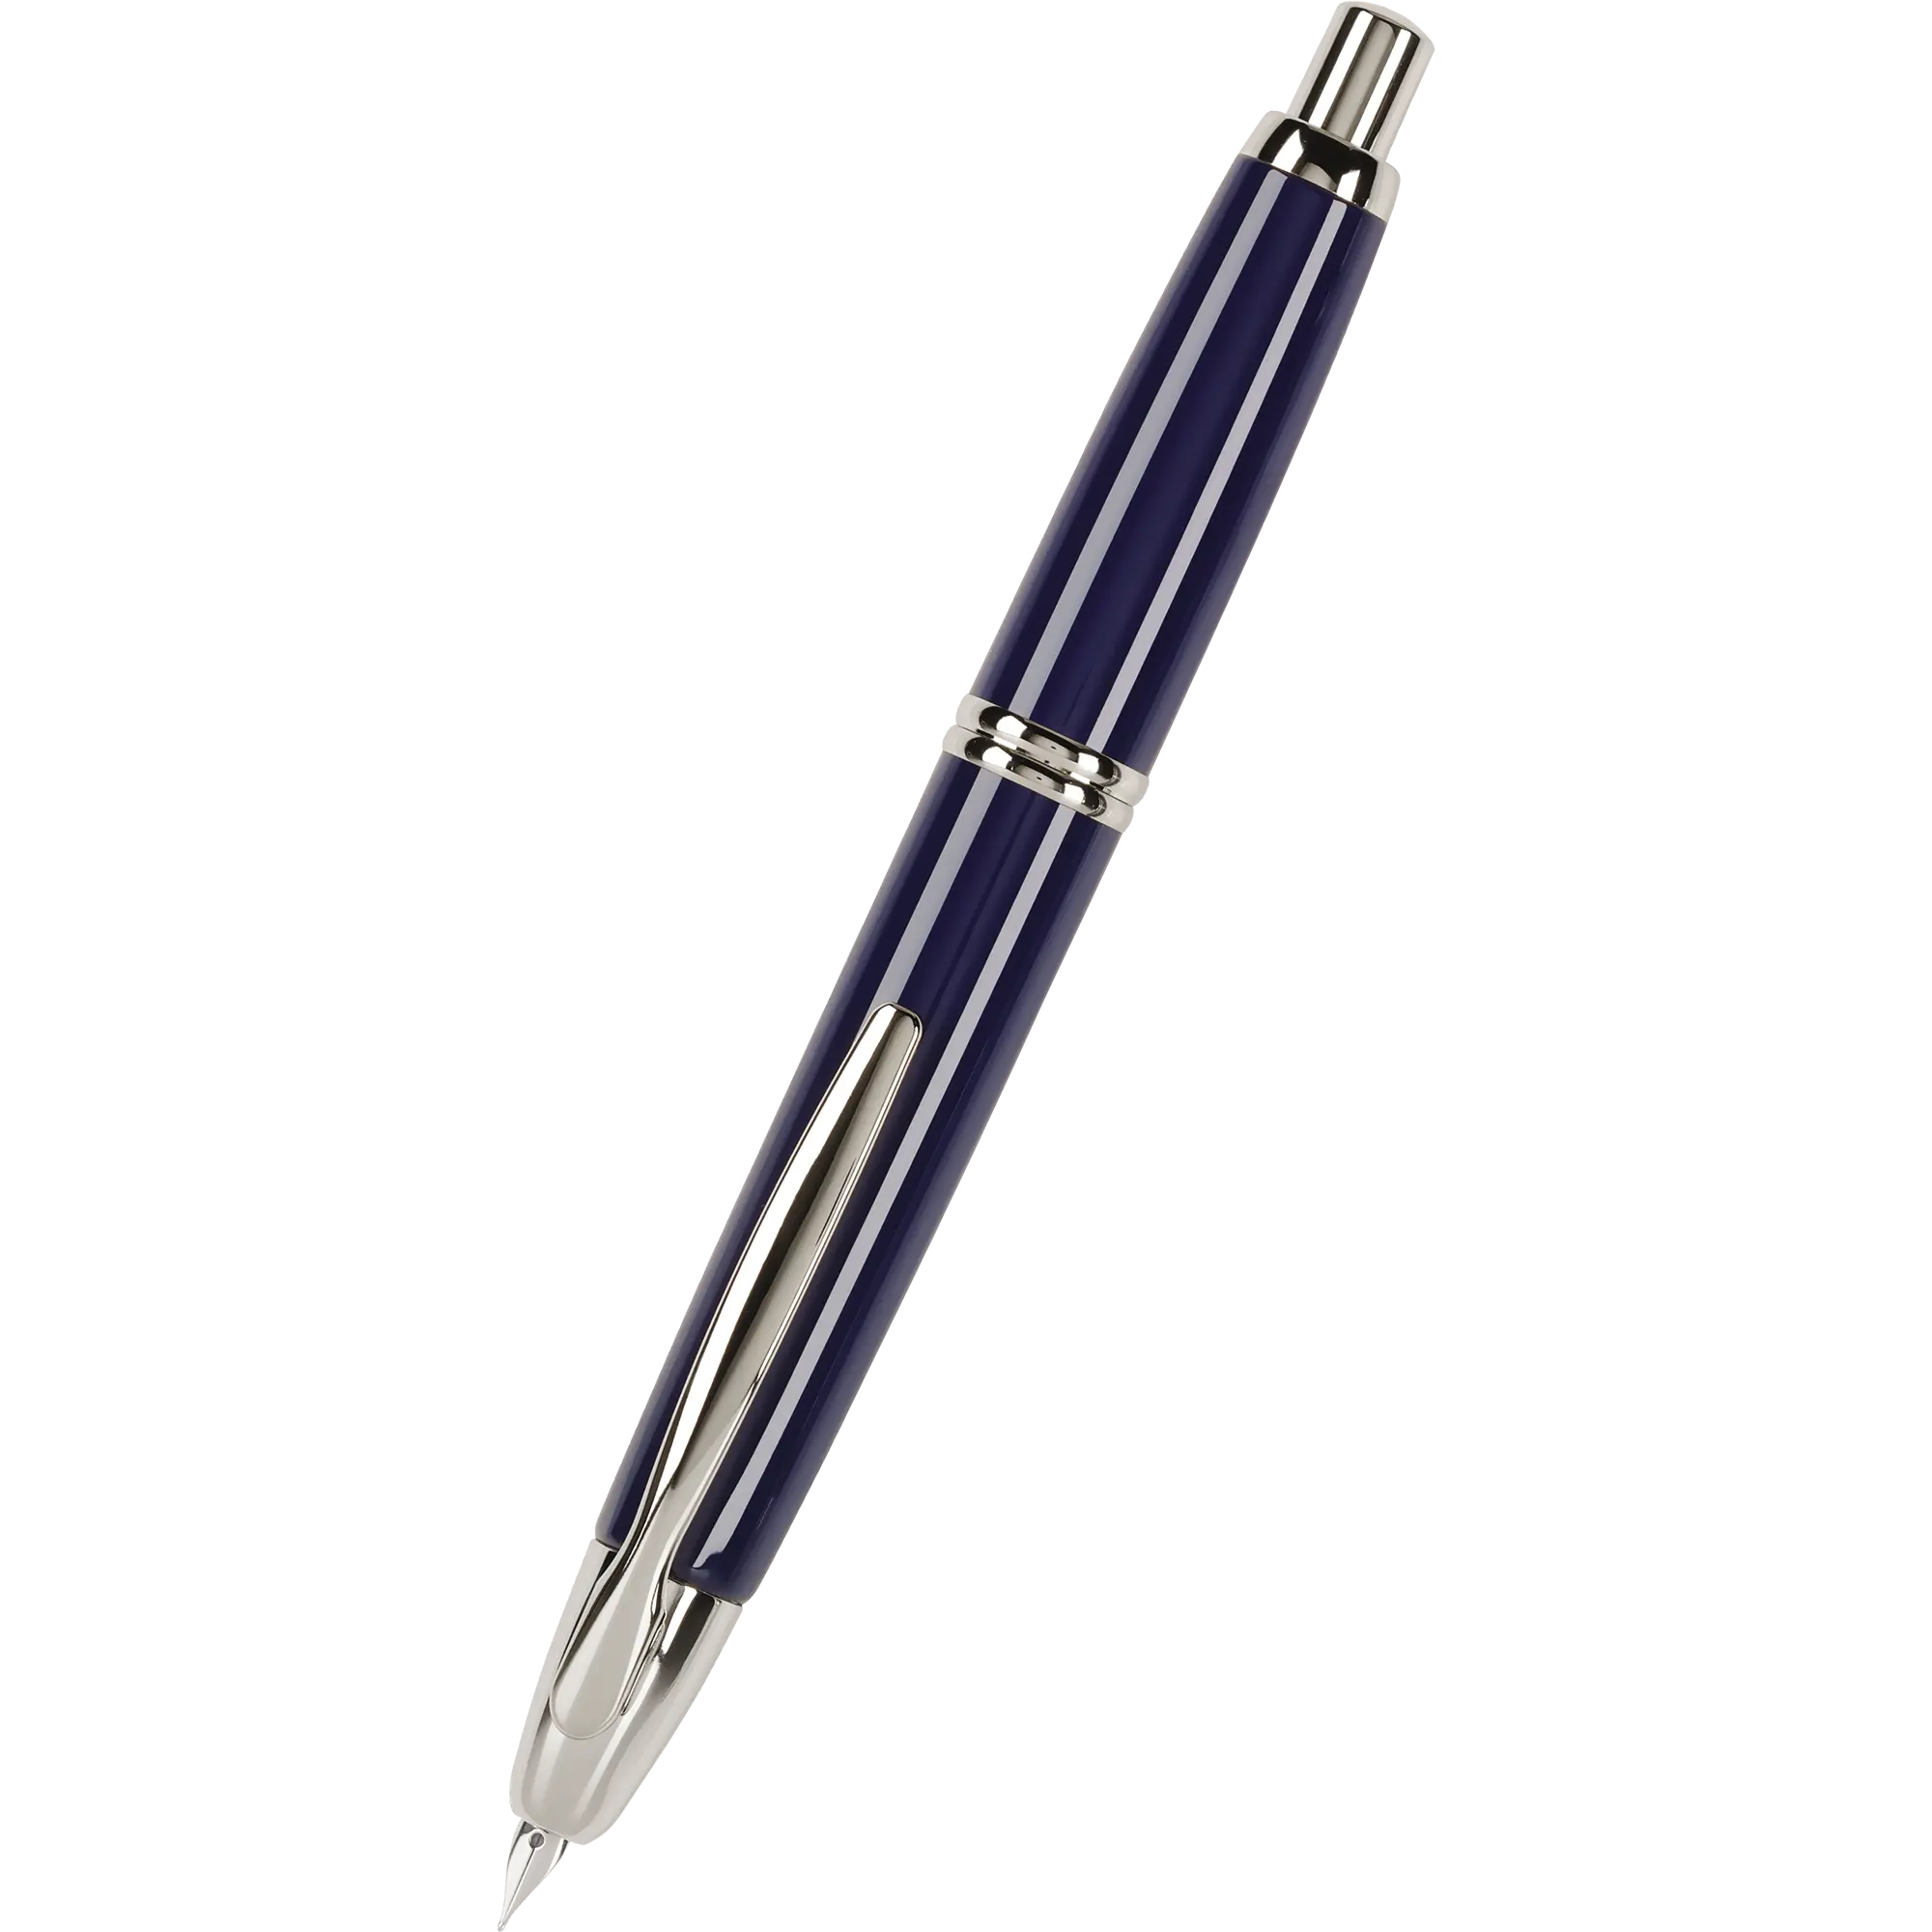 Pilot Vanishing Point Fountain Pen - Blue - Rhodium Trim-Pen Boutique Ltd